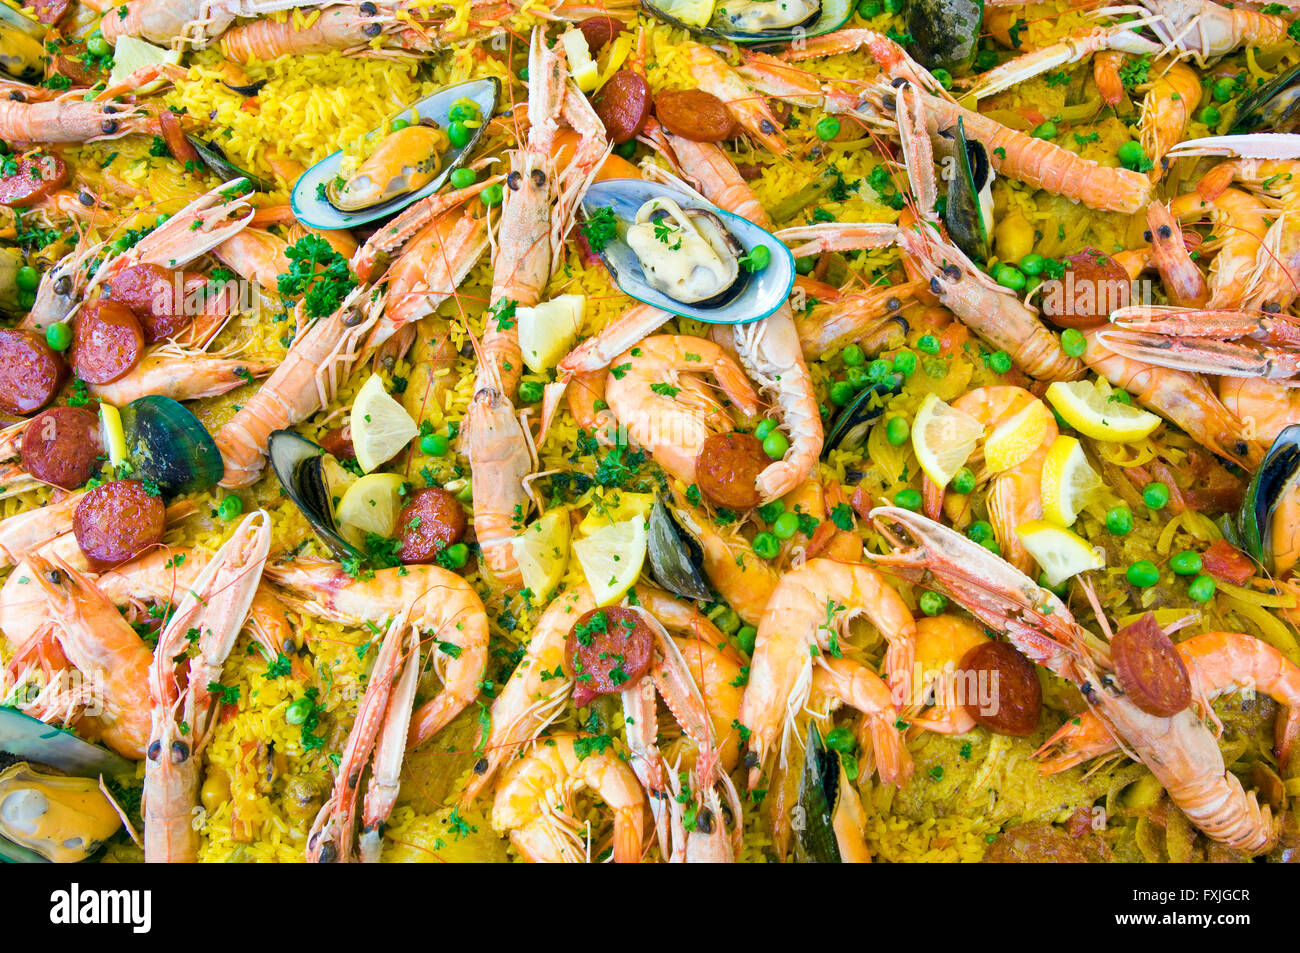 La paella di frutti di mare presso il mercato degli agricoltori a Sarlat-la-Canéda nel sud-ovest della Francia Foto Stock